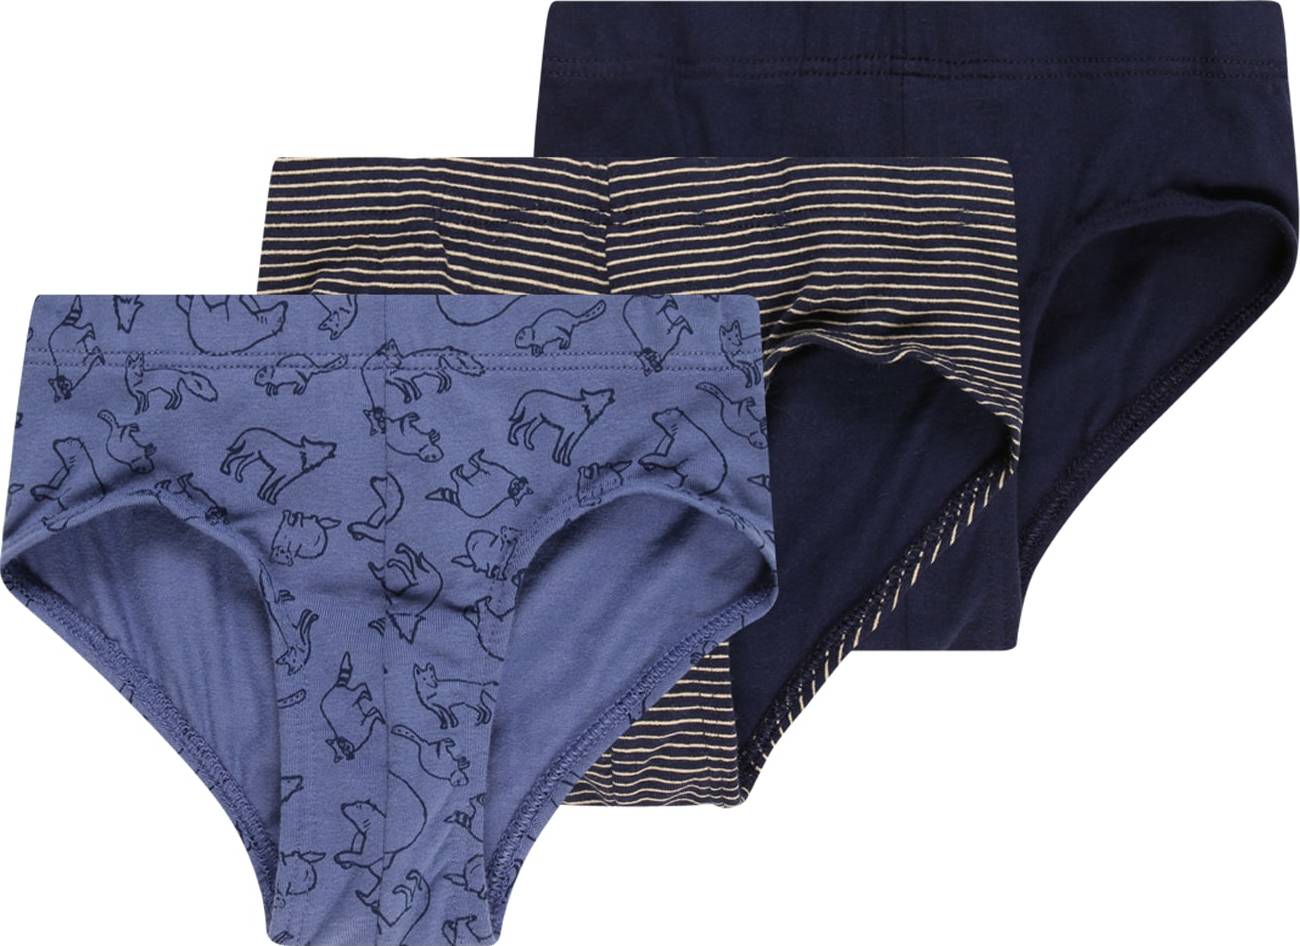 SCHIESSER Spodní prádlo krémová / námořnická modř / noční modrá